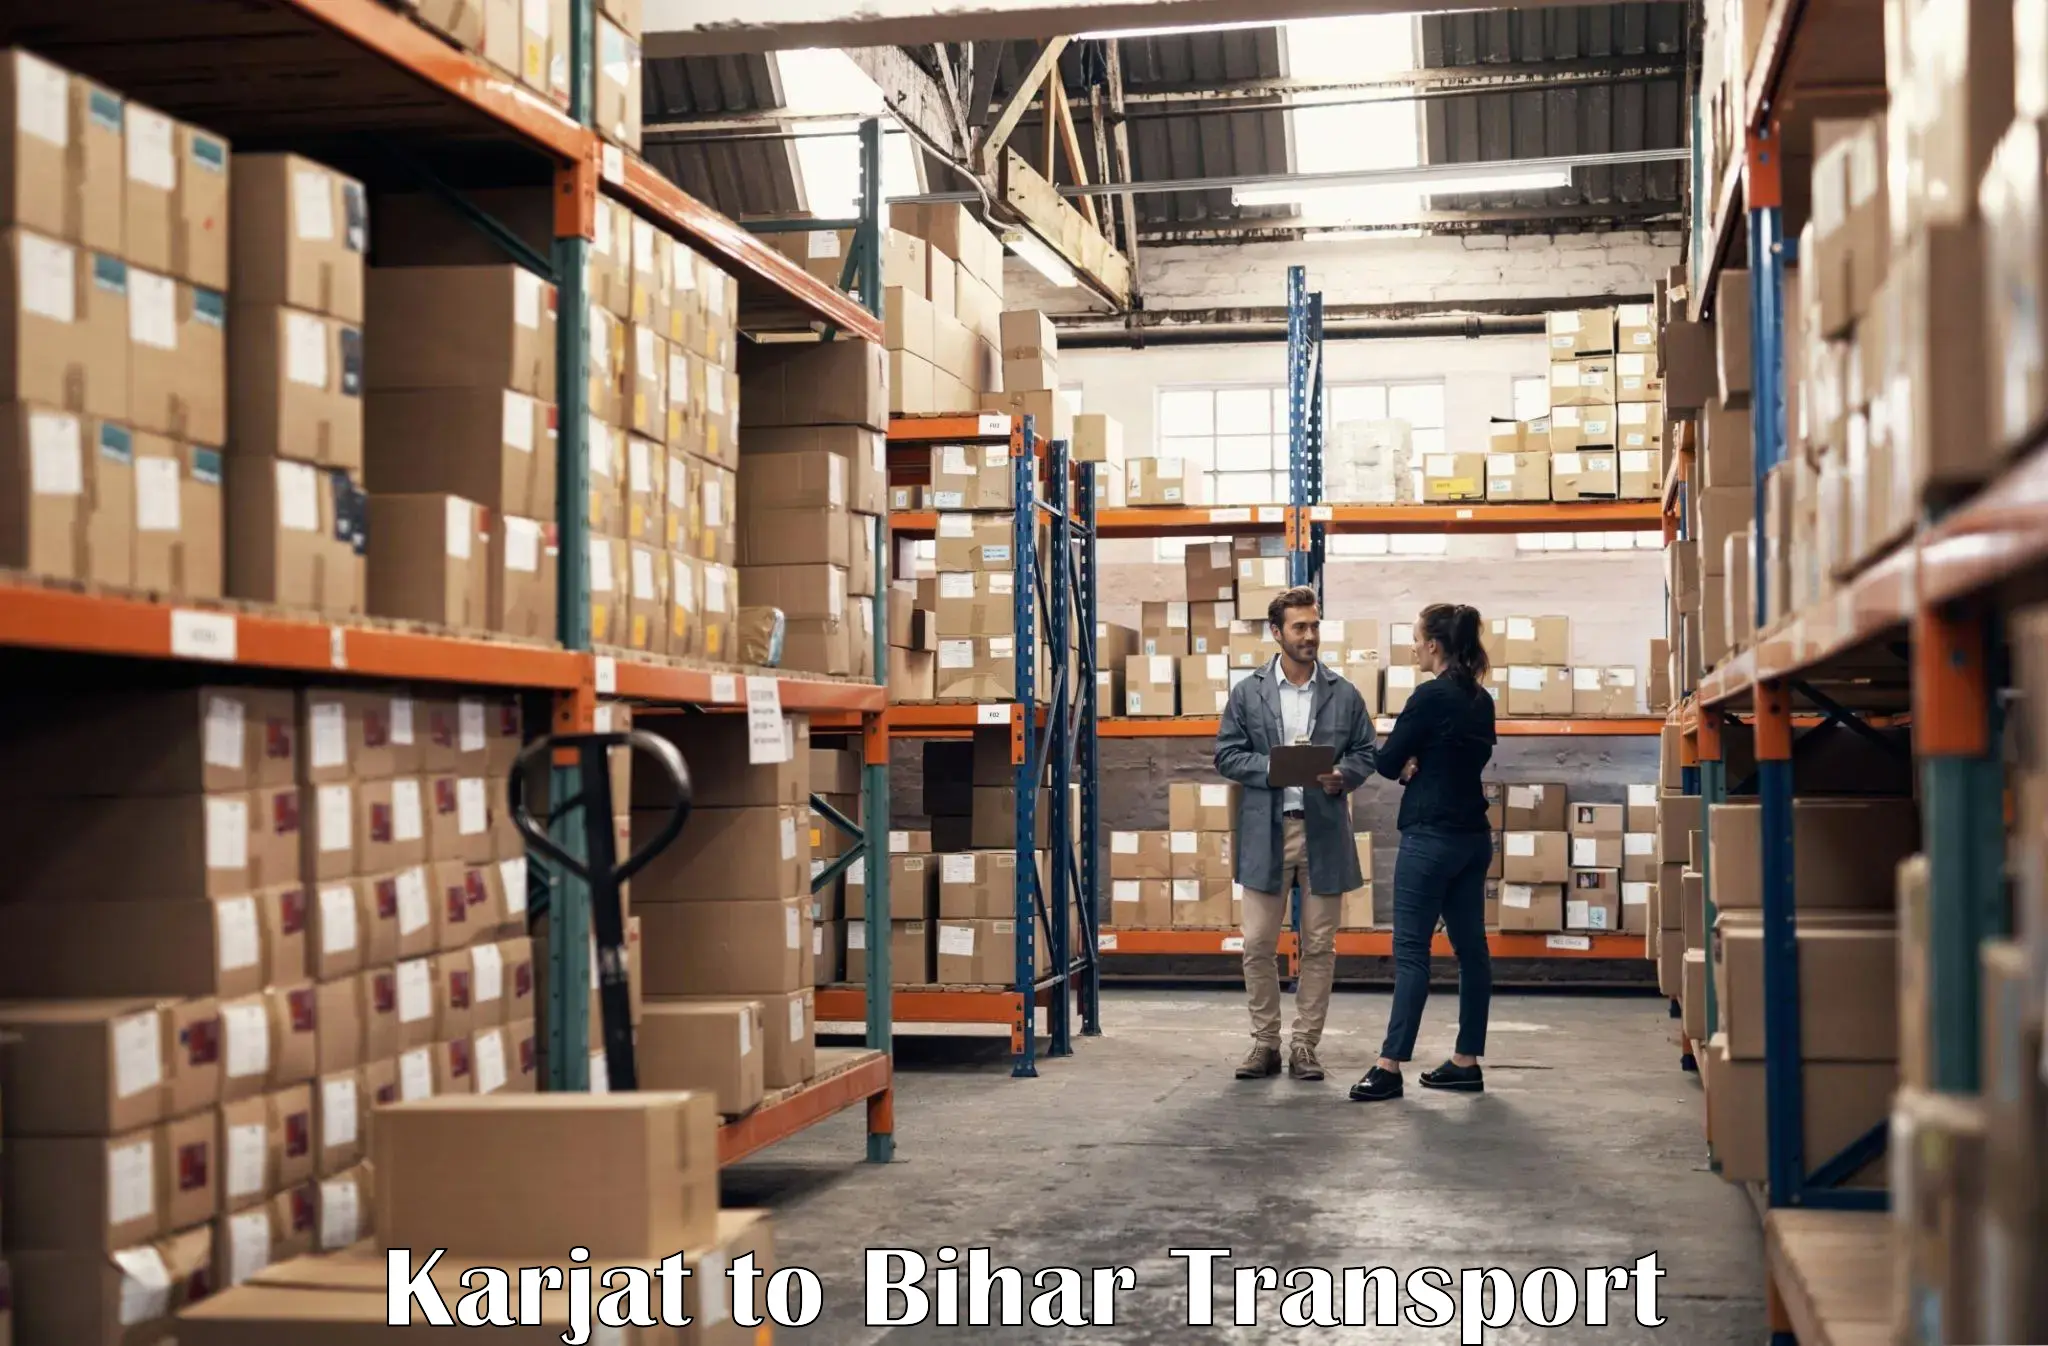 Furniture transport service Karjat to Andar Siwan